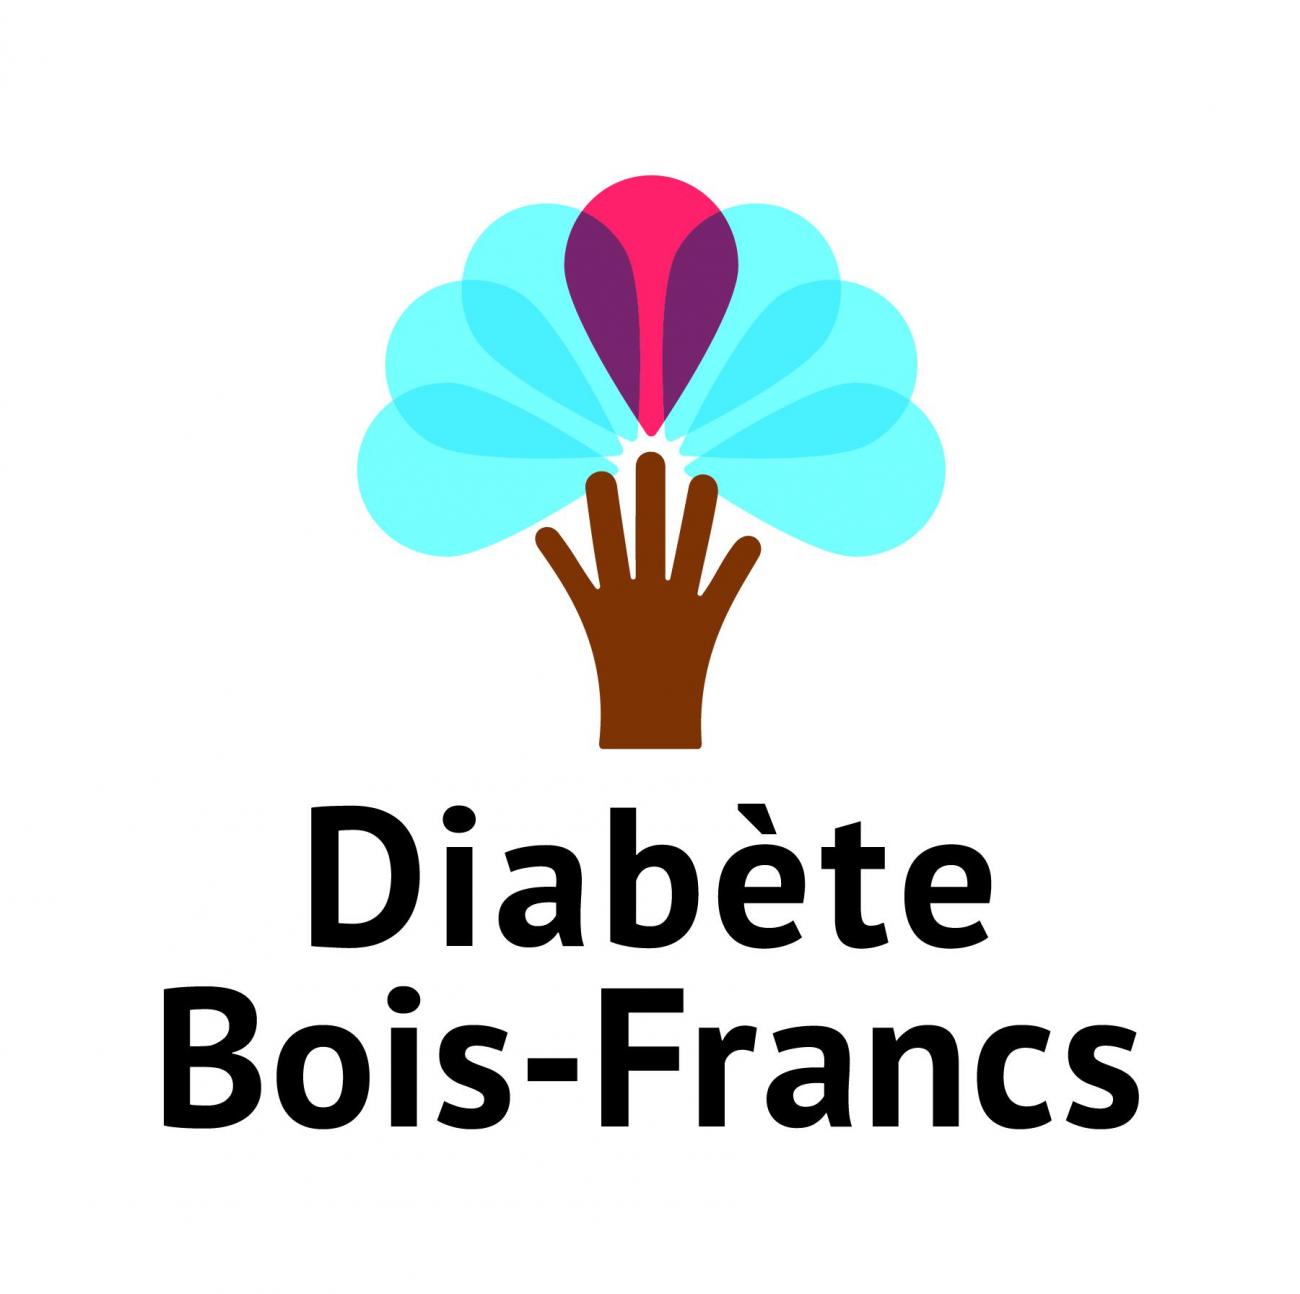 Diabète Bois-Francs